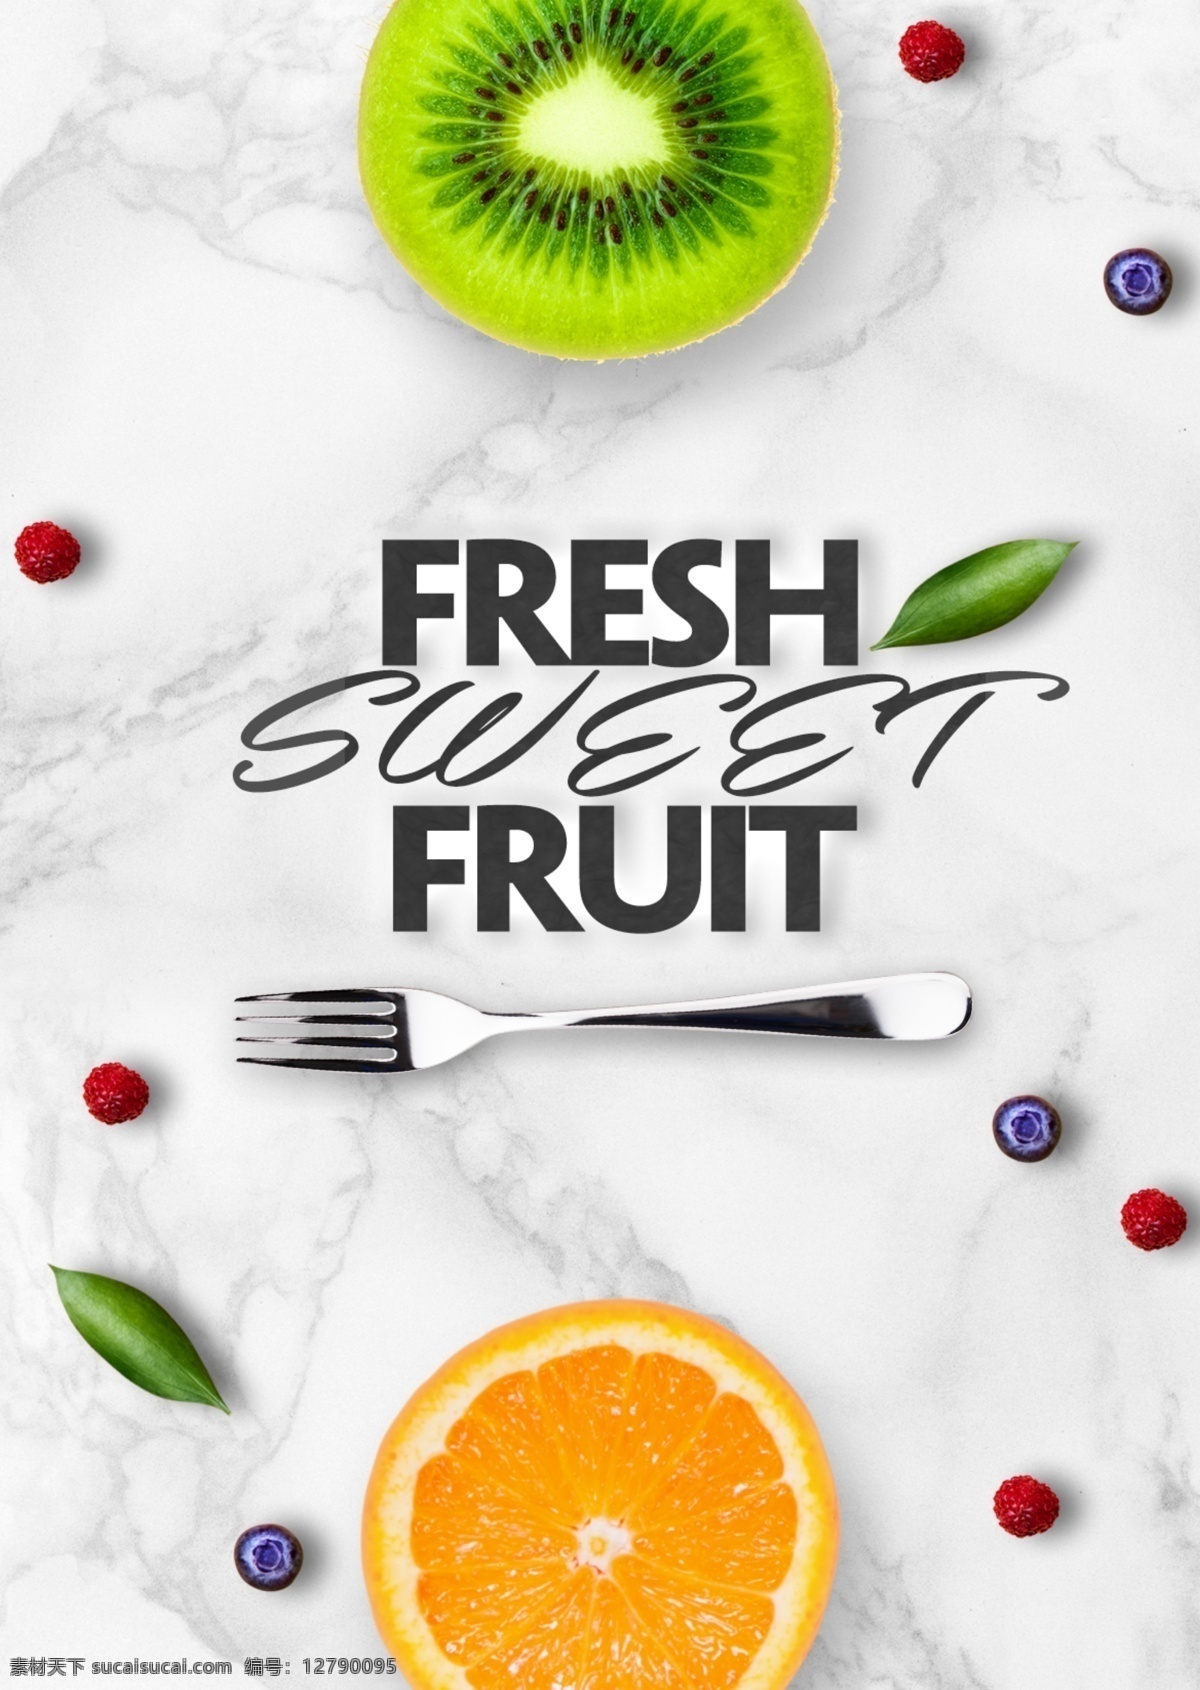 白色 大理石 猕猴桃 红色 蓝莓 宣传海报 简单 水果 甜食 橘色 清臣 时装 海报 现代 宣传